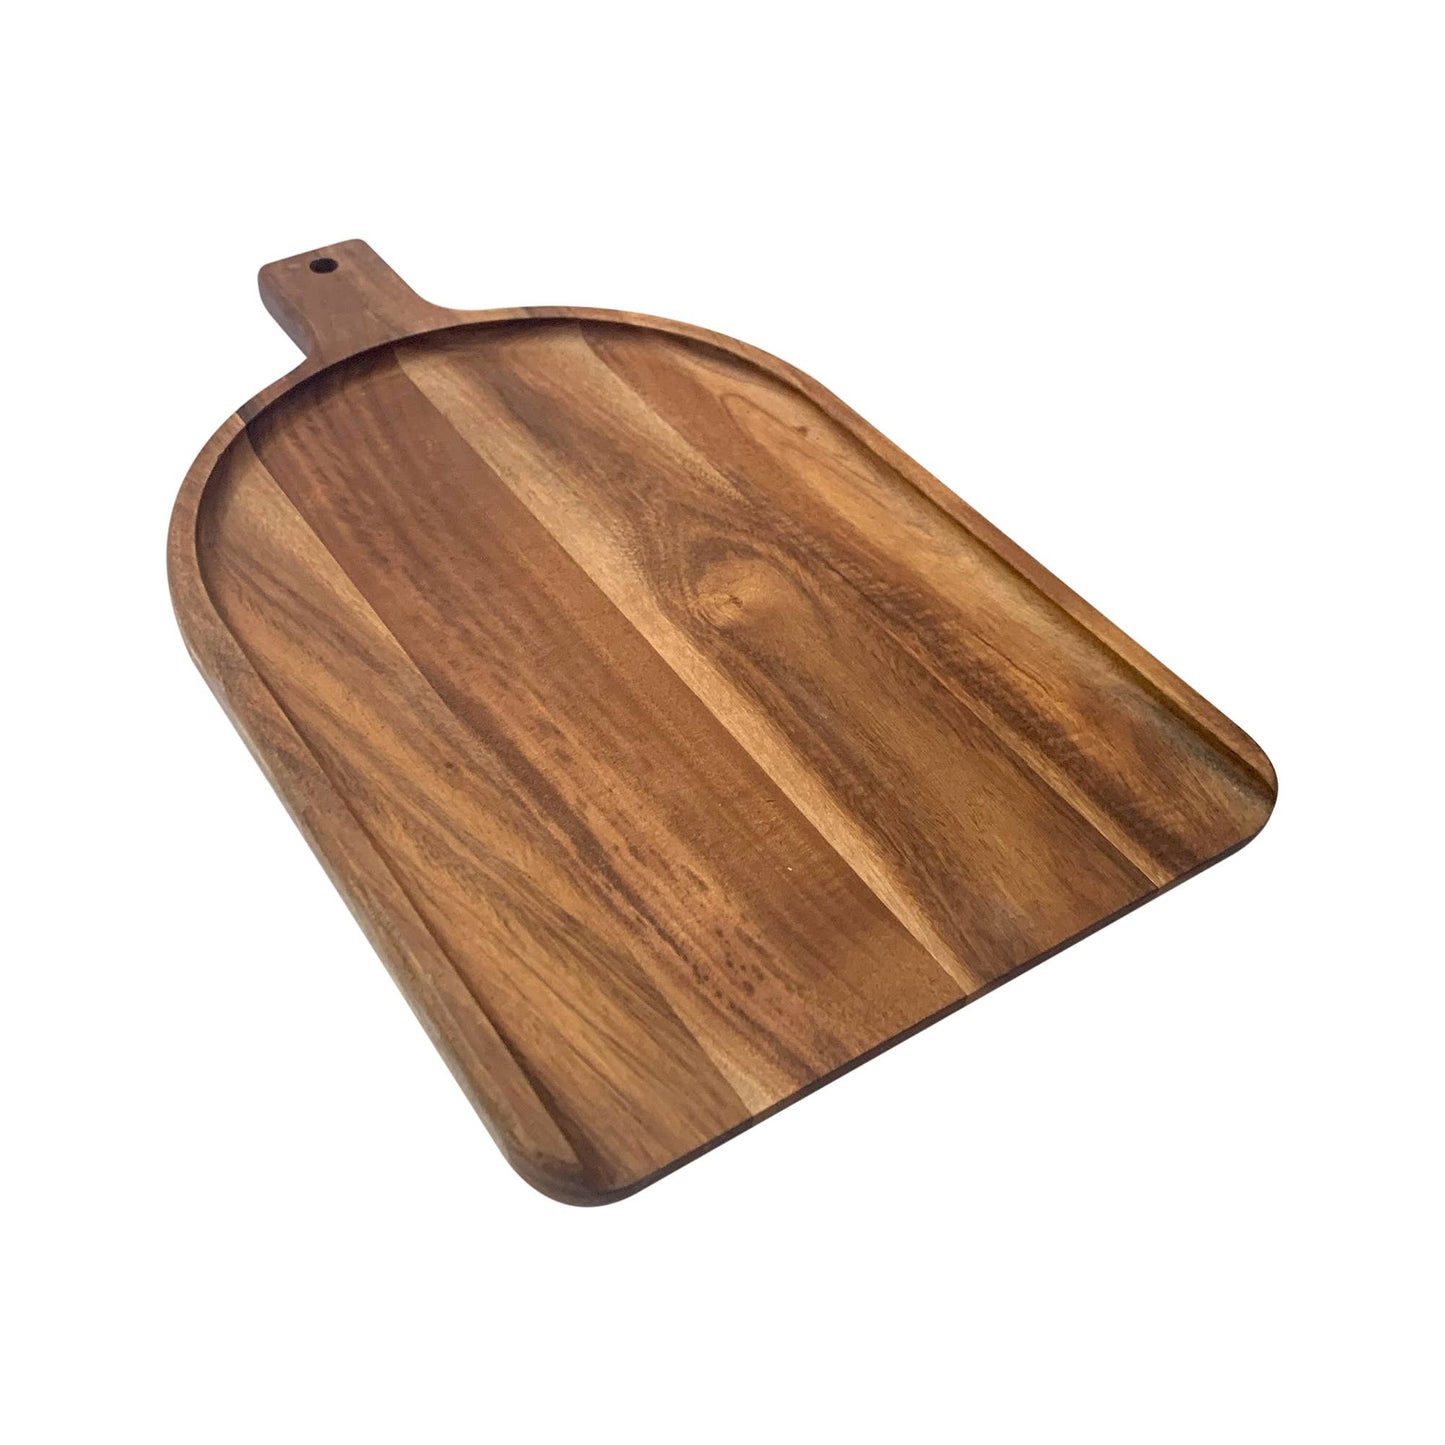 Ironwood Charcuterie Paddle, Small, 14” x 9”